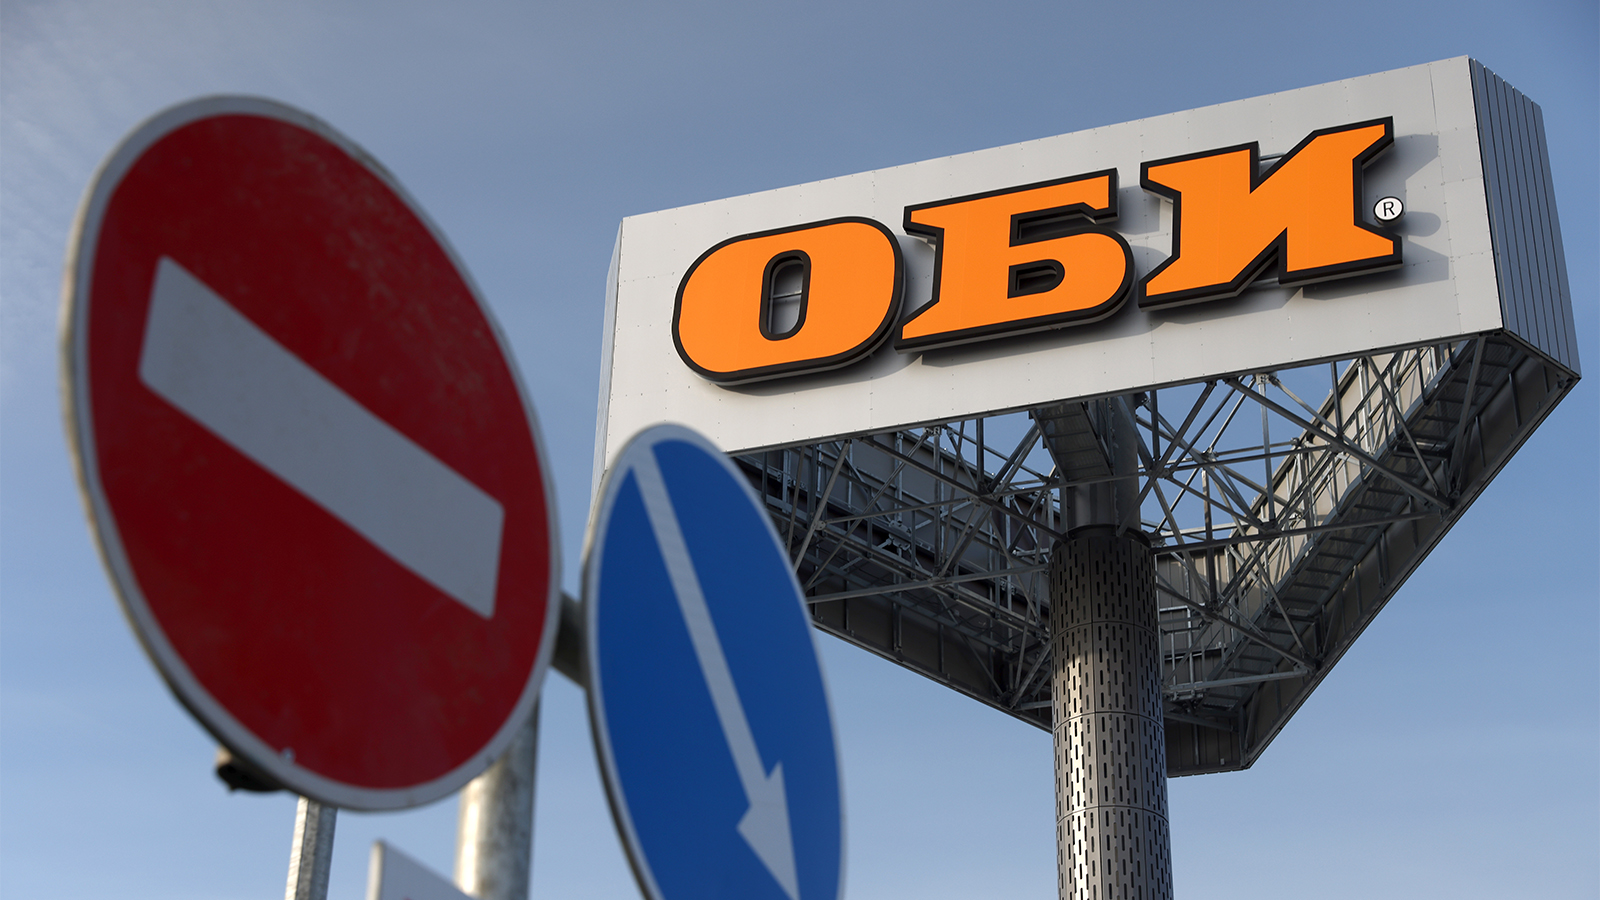 ФАС согласовала сделку по продаже российского бизнеса OBI - Российская газета